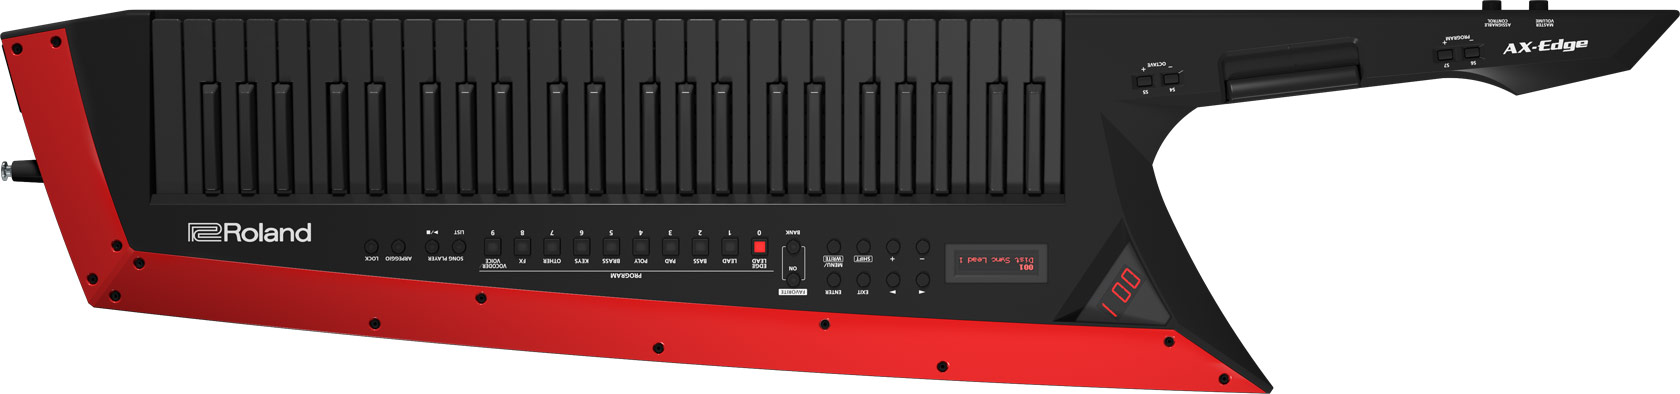 Roland AX-EDGE-B Shoulder Keyboard Synthesizer black